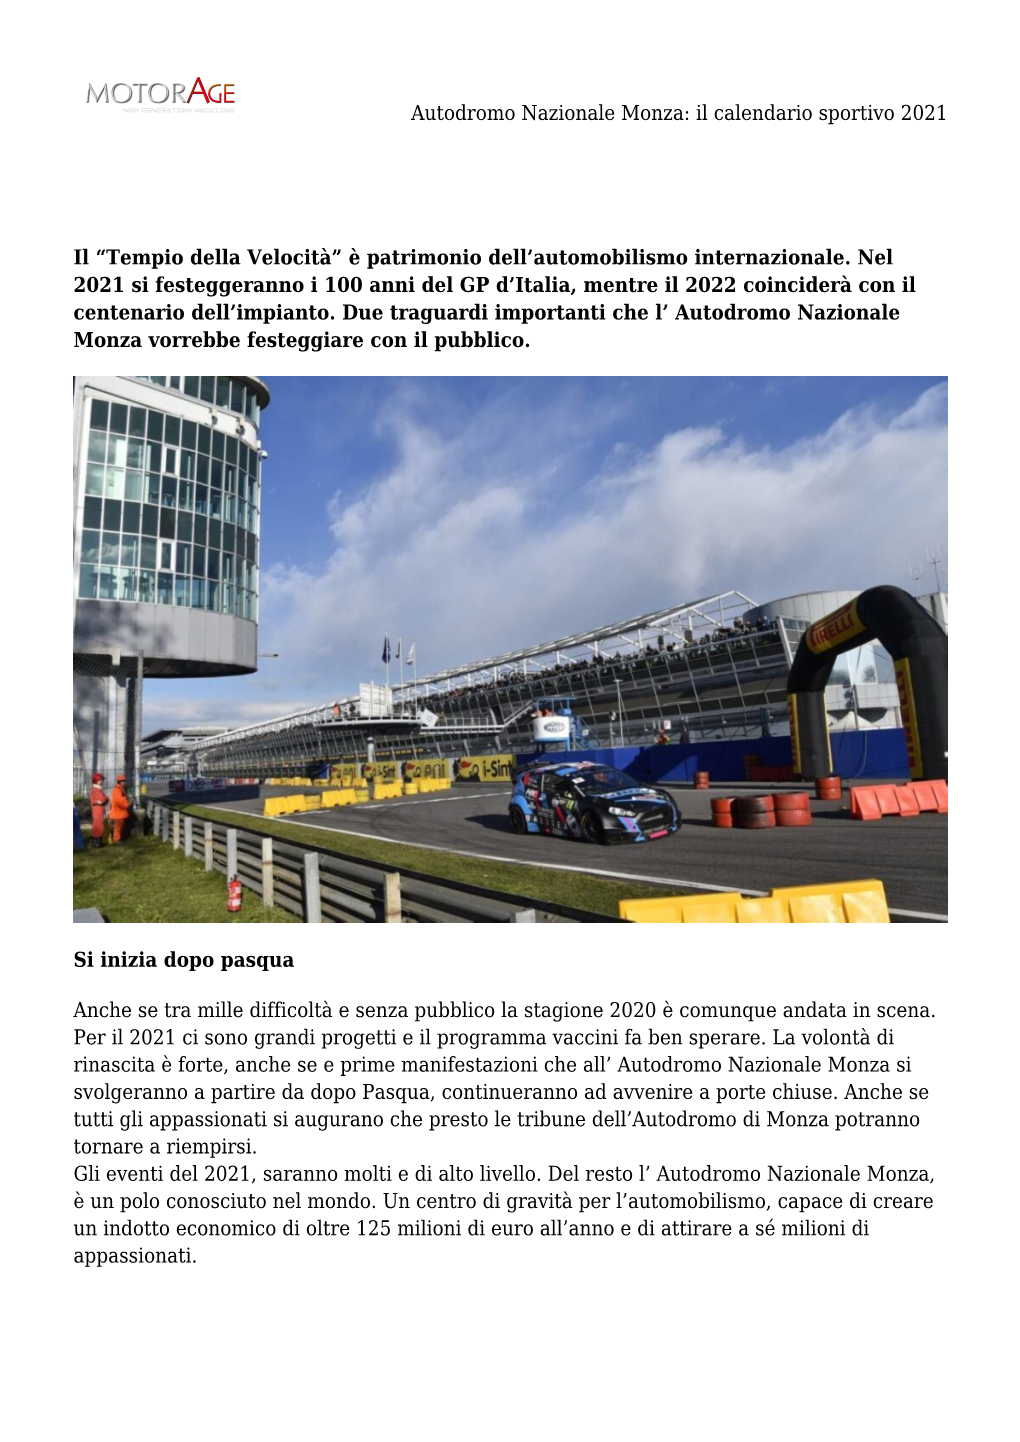 Autodromo Nazionale Monza: Il Calendario Sportivo 2021